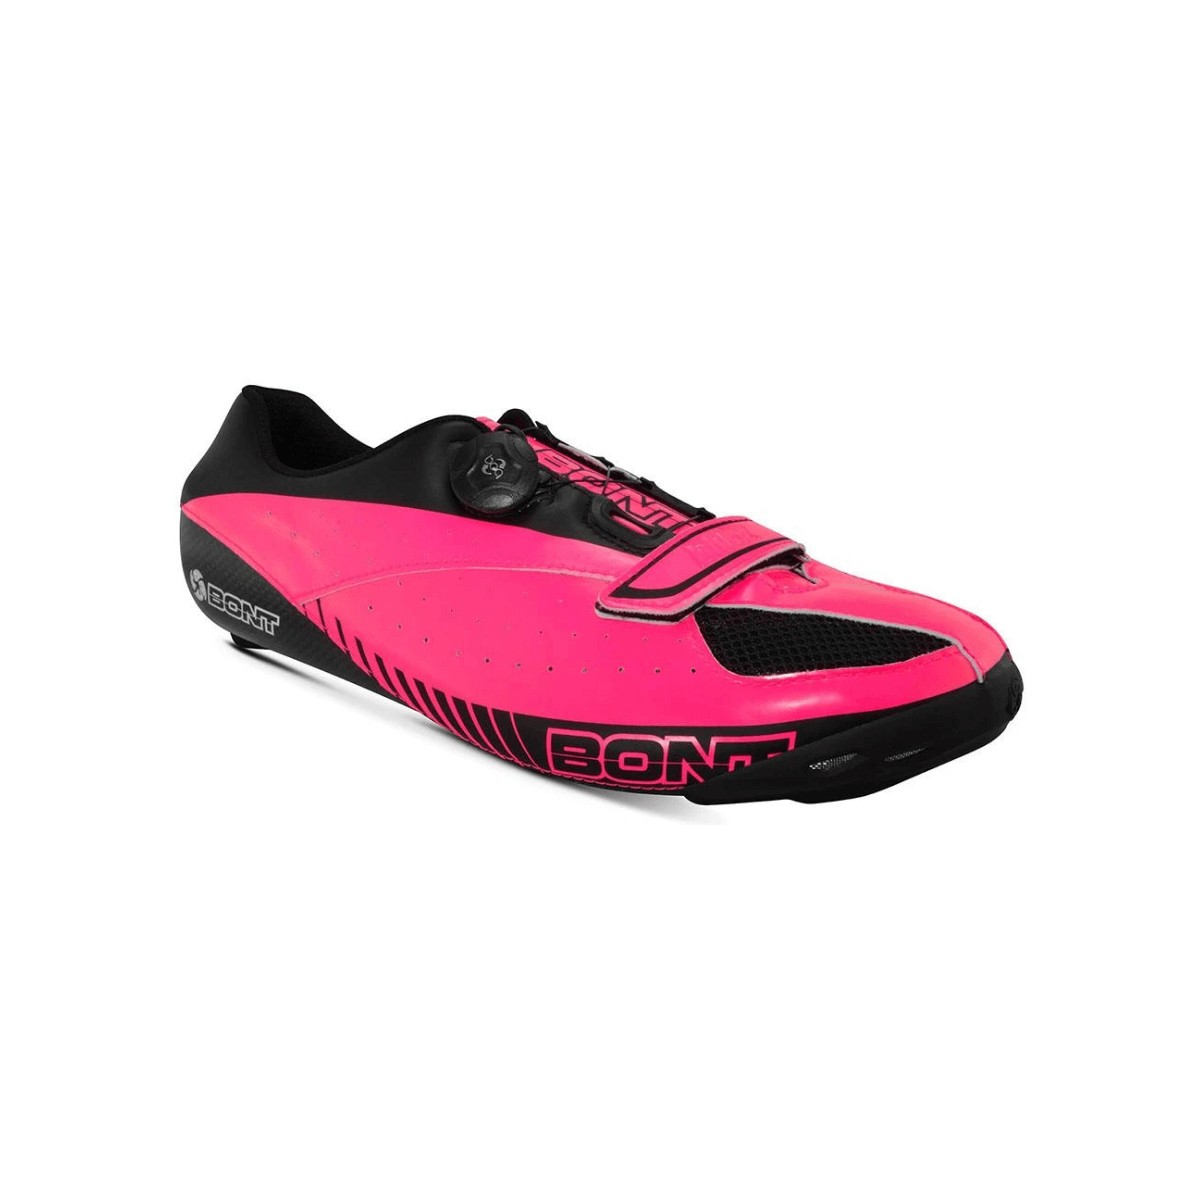 Rennradschuhe günstig Kaufen-Bont Blitz Rennradschuhe Pink Schwarz, Größe 37 - EUR. Bont Blitz Rennradschuhe Pink Schwarz, Größe 37 - EUR <![CDATA[Bont Blitz Rennradschuhe Pink Schwarz
 Die Bont Blitz Rennradschuhe sind High-End-Schuhe, die sich perfekt an den Fu